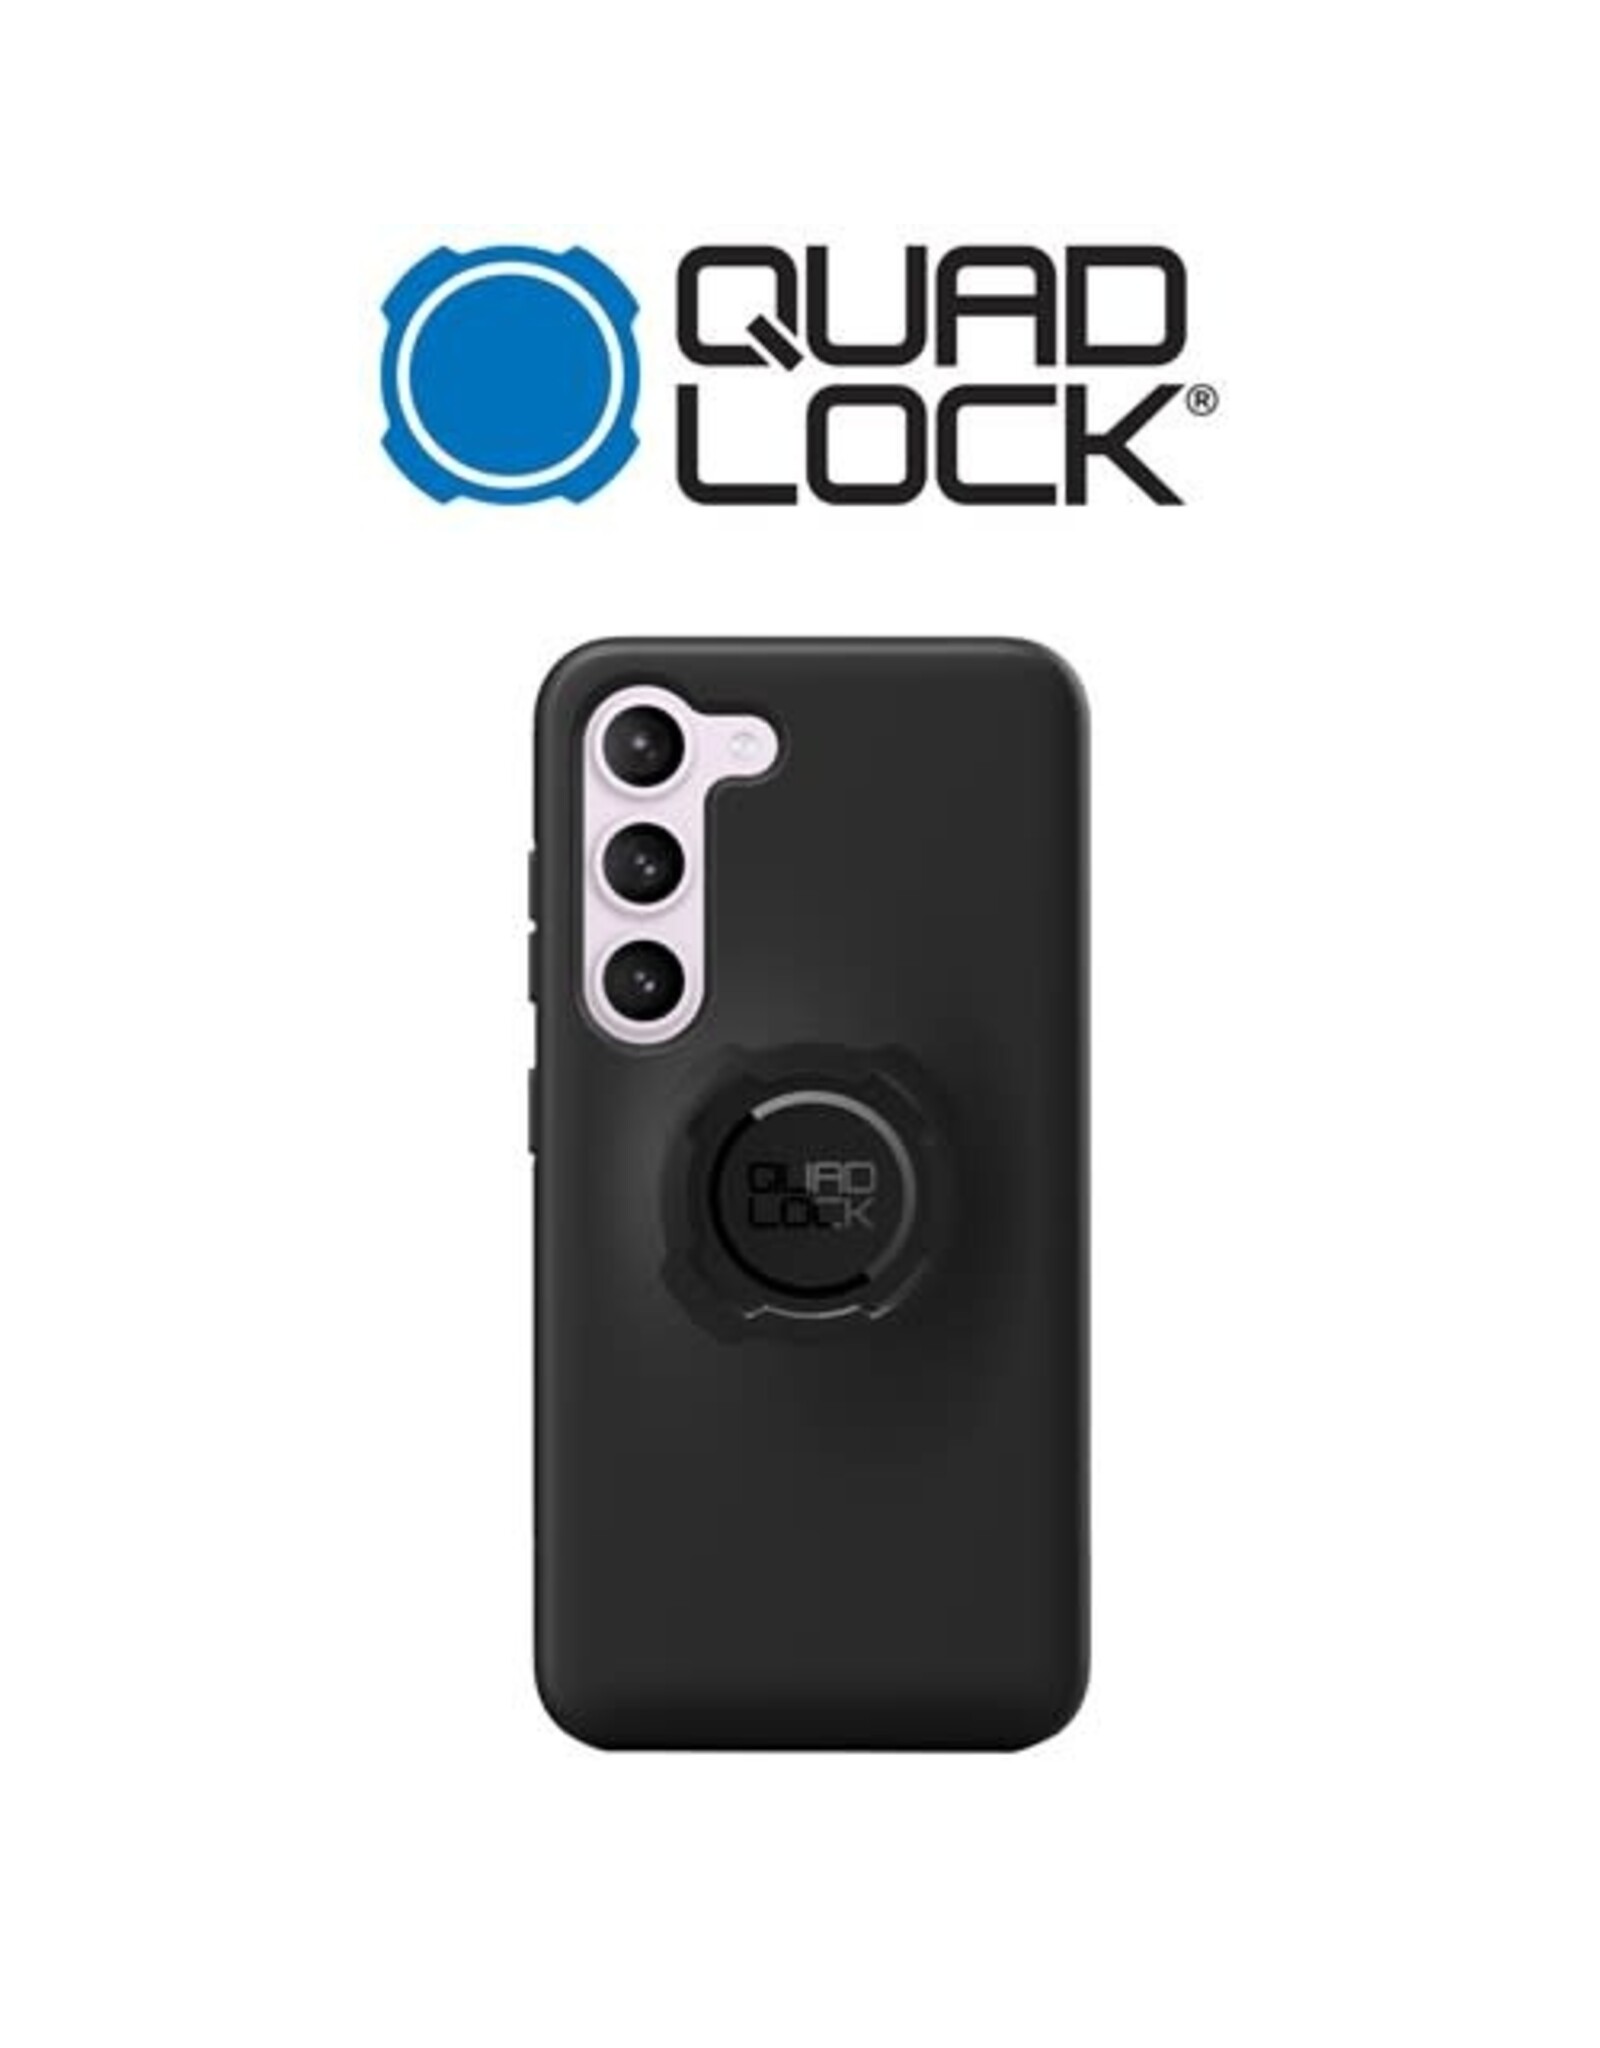 QUAD LOCK QUAD LOCK FOR GALAXY S23+ PHONE CASE